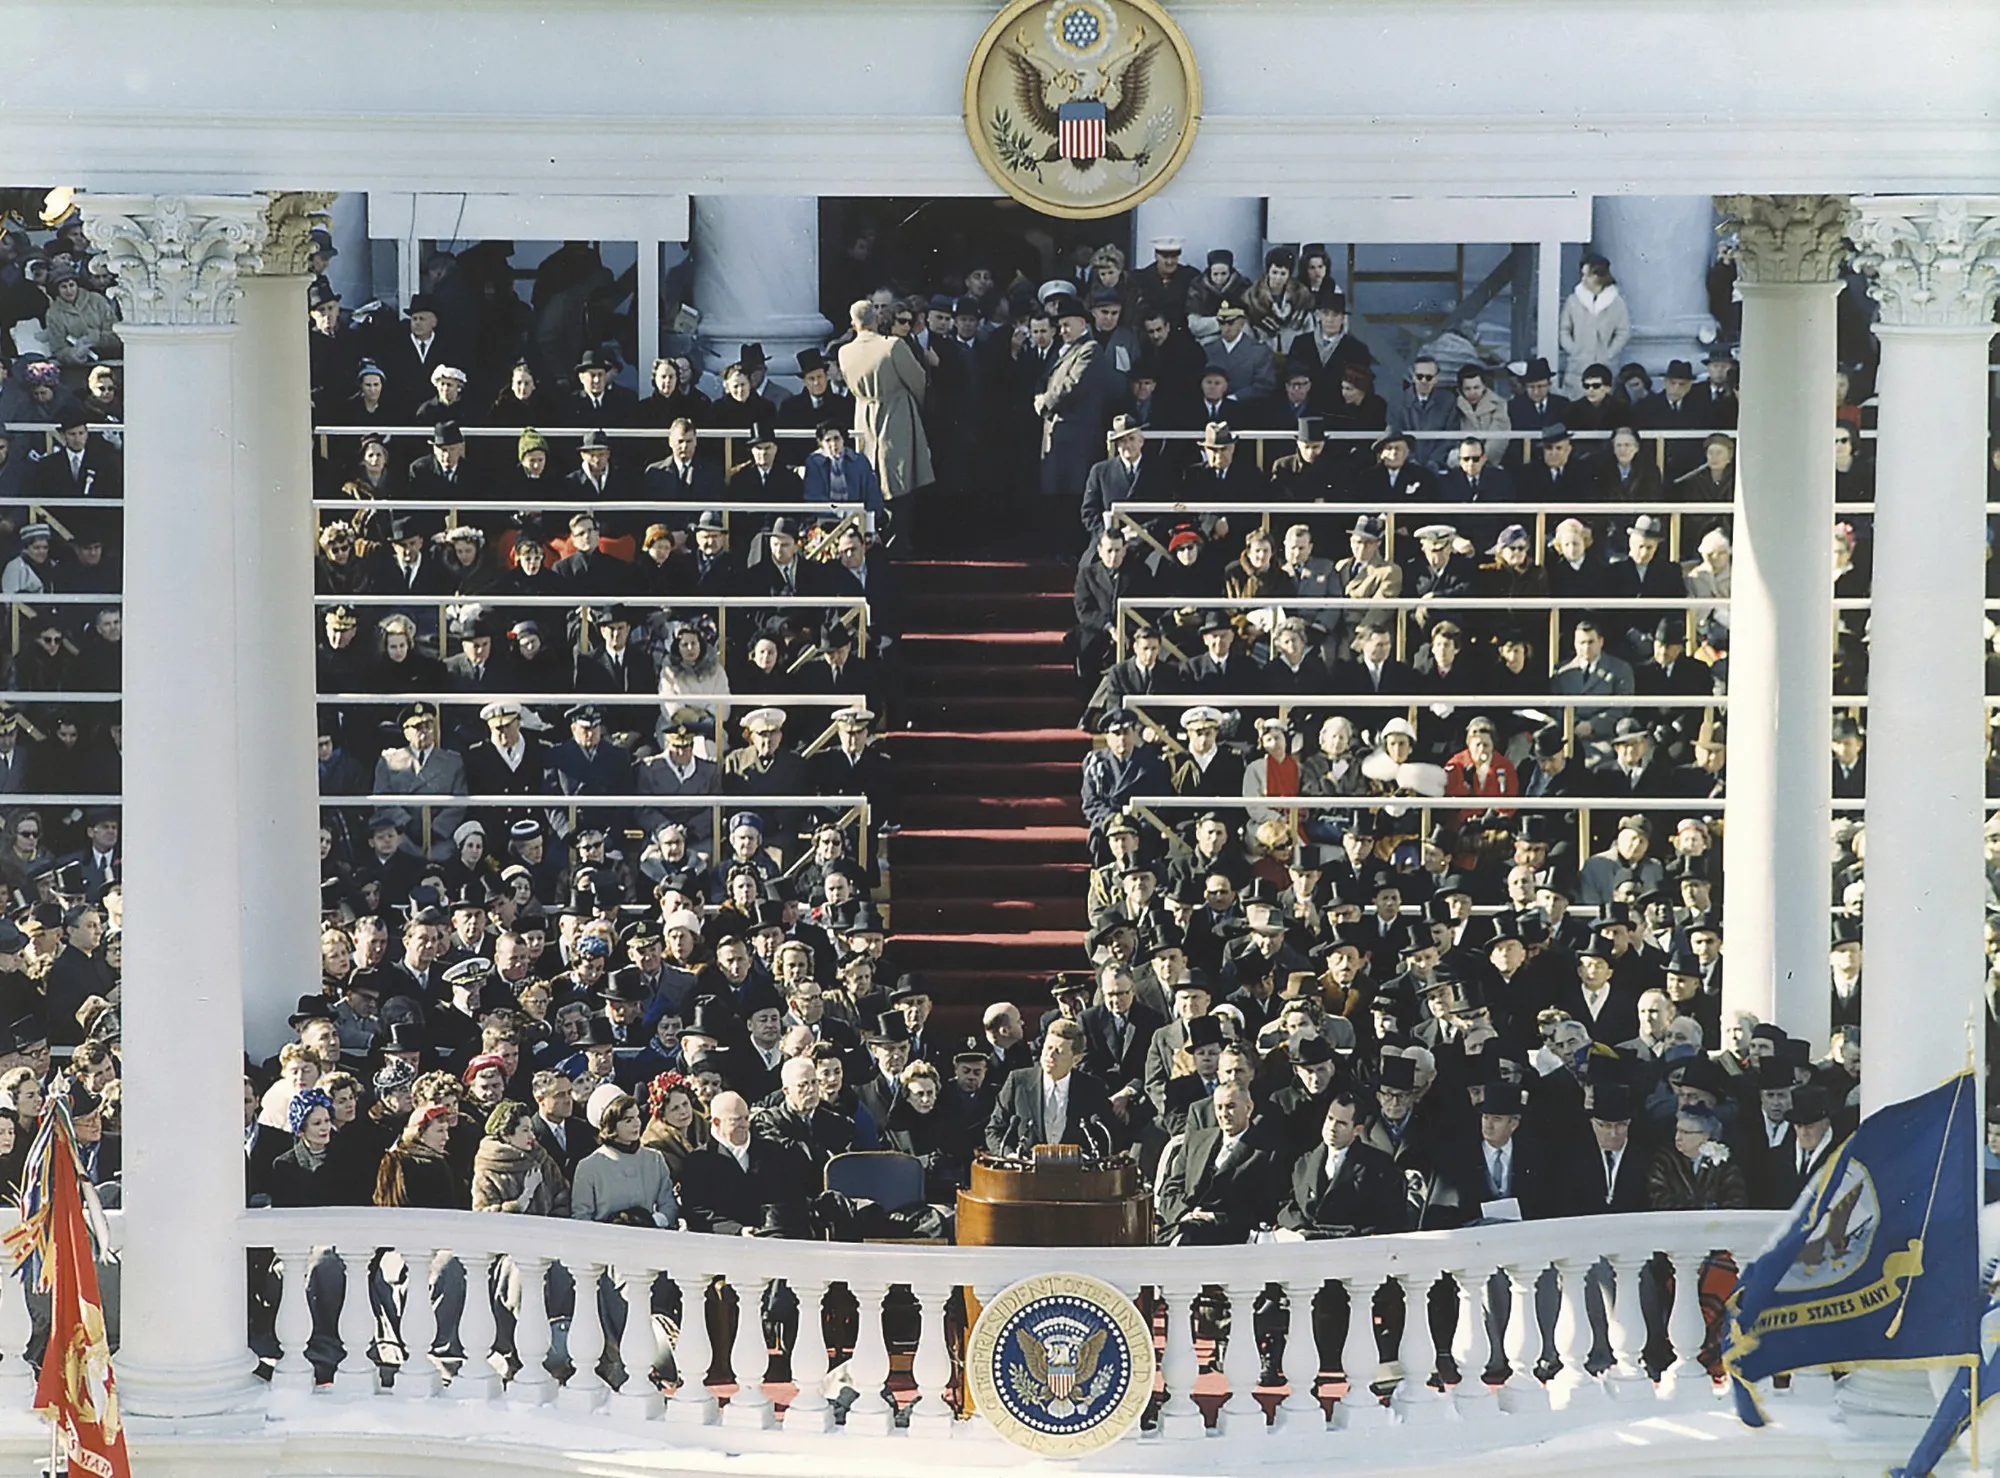 Discours inaugural du président John F. Kennedy, le 20 janvier 1961 à Washington D.C.